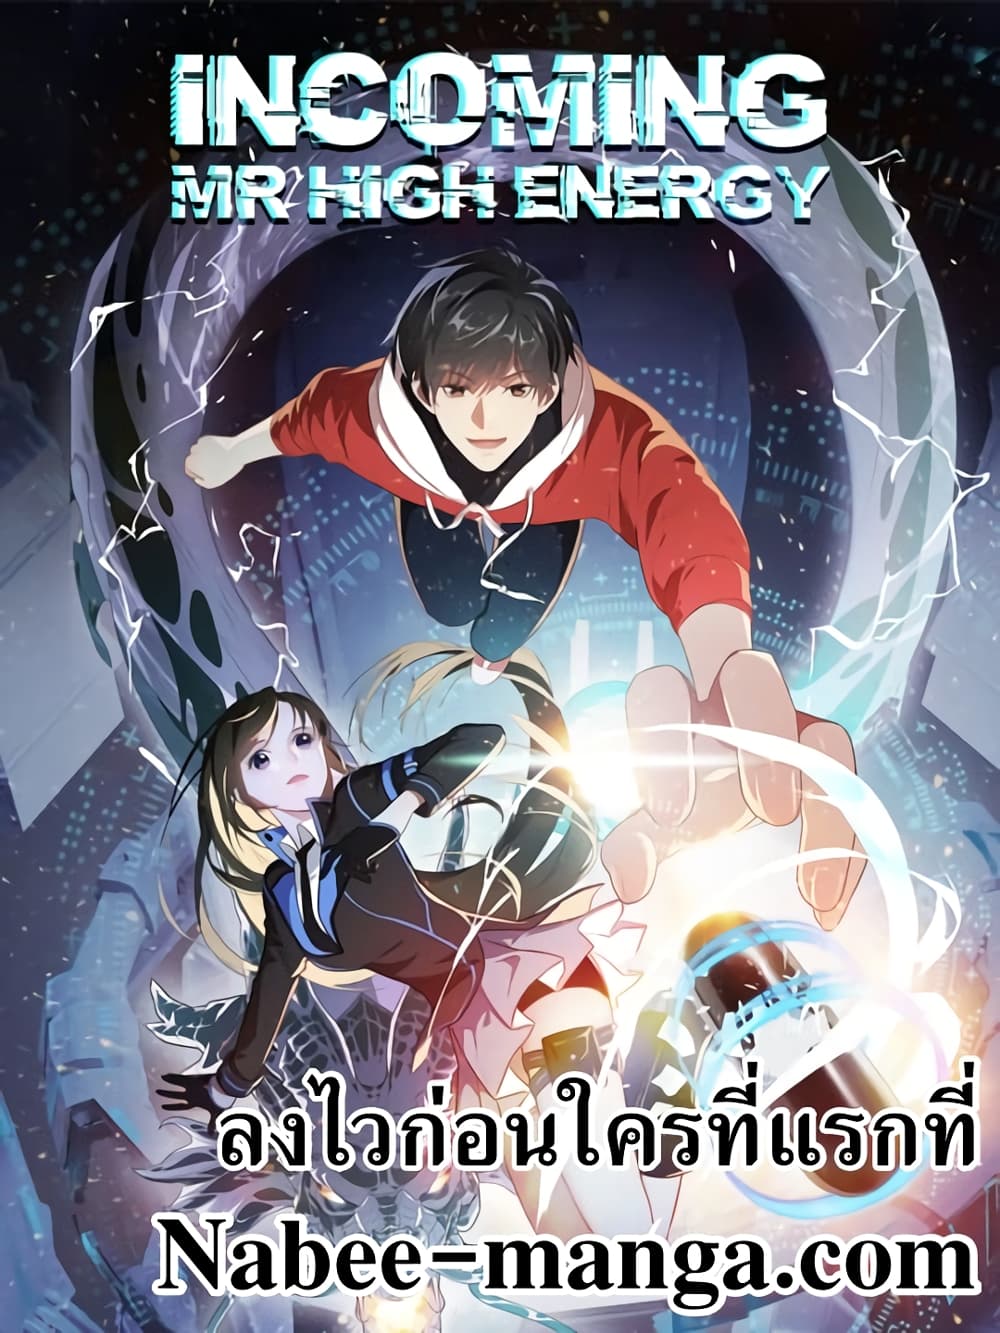 High Energy Strikes 143 (1)